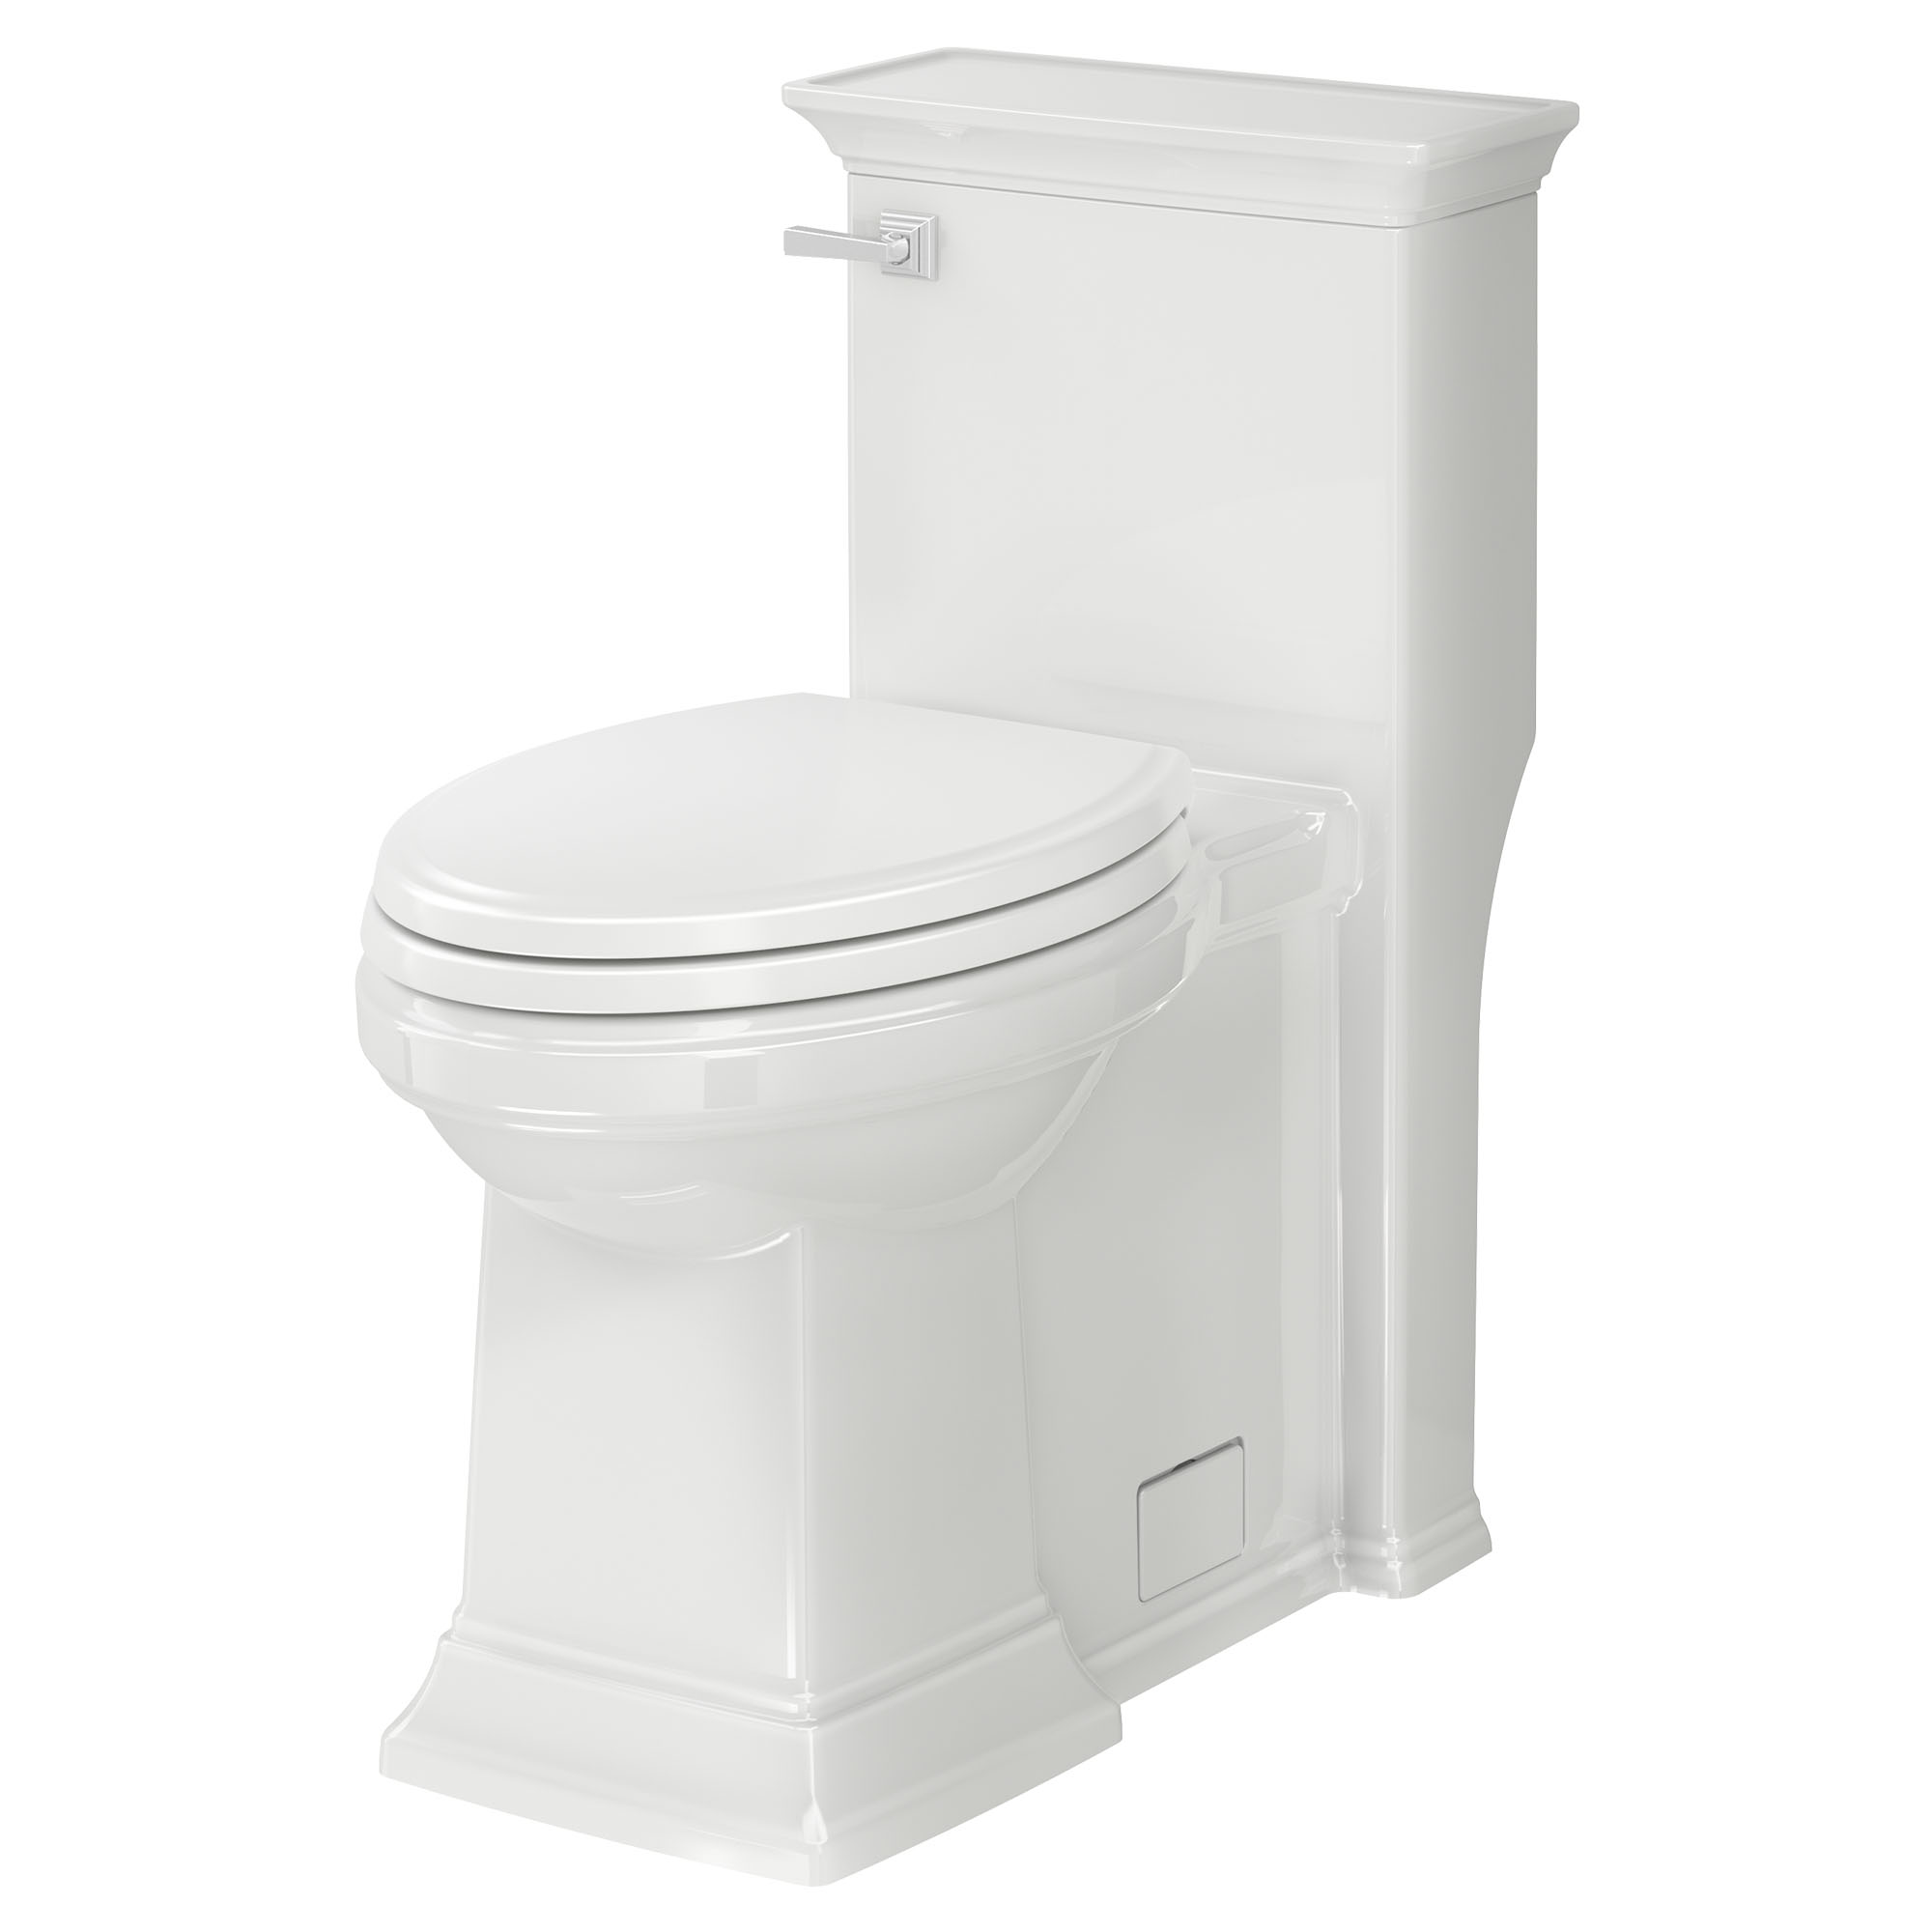 Toilette monopièce Town Square S, 1,28 gpc/4,8 lpc, à cuvette allongée à hauteur de chaise avec siège